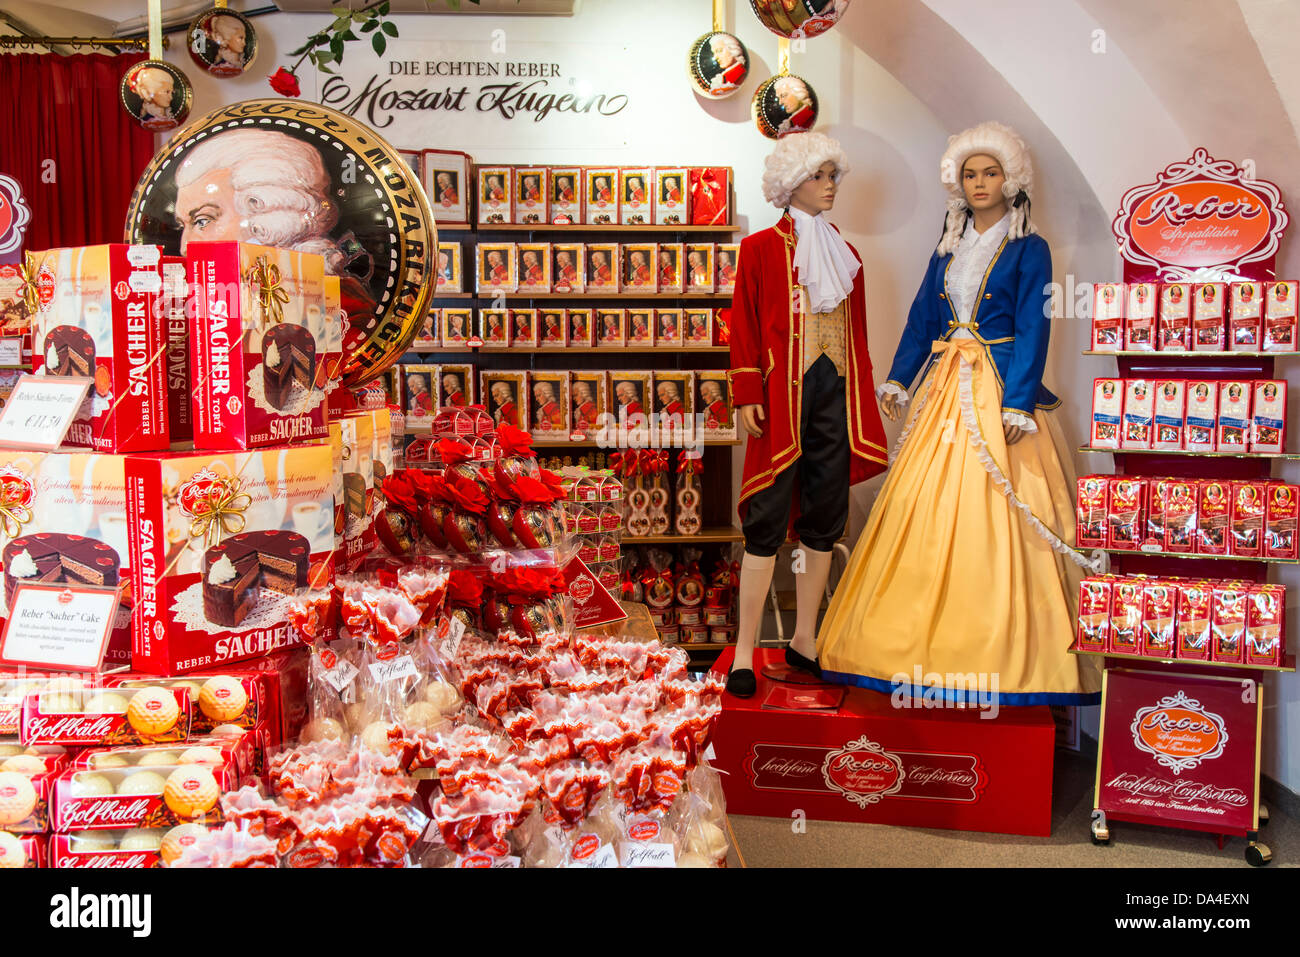 Interior view of Echten Reber Mozart Kugeln confectionery shop in Alter Markt Square, Salzburg, Austria Stock Photo